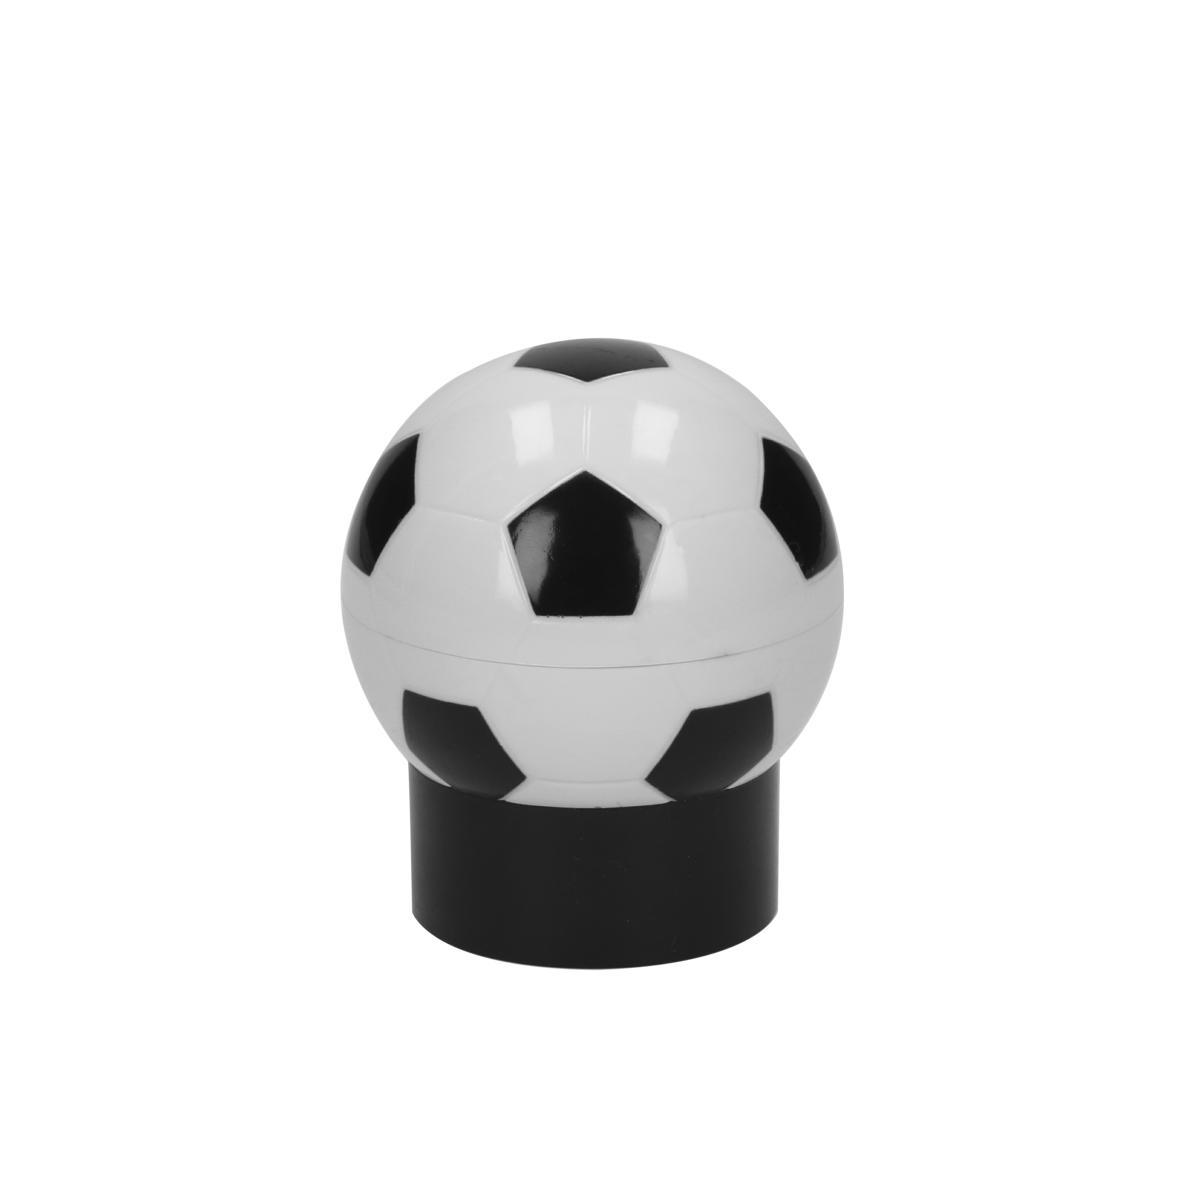 Apribottiglie a forma di pallone da calcio con funzione pop-up - Malnate